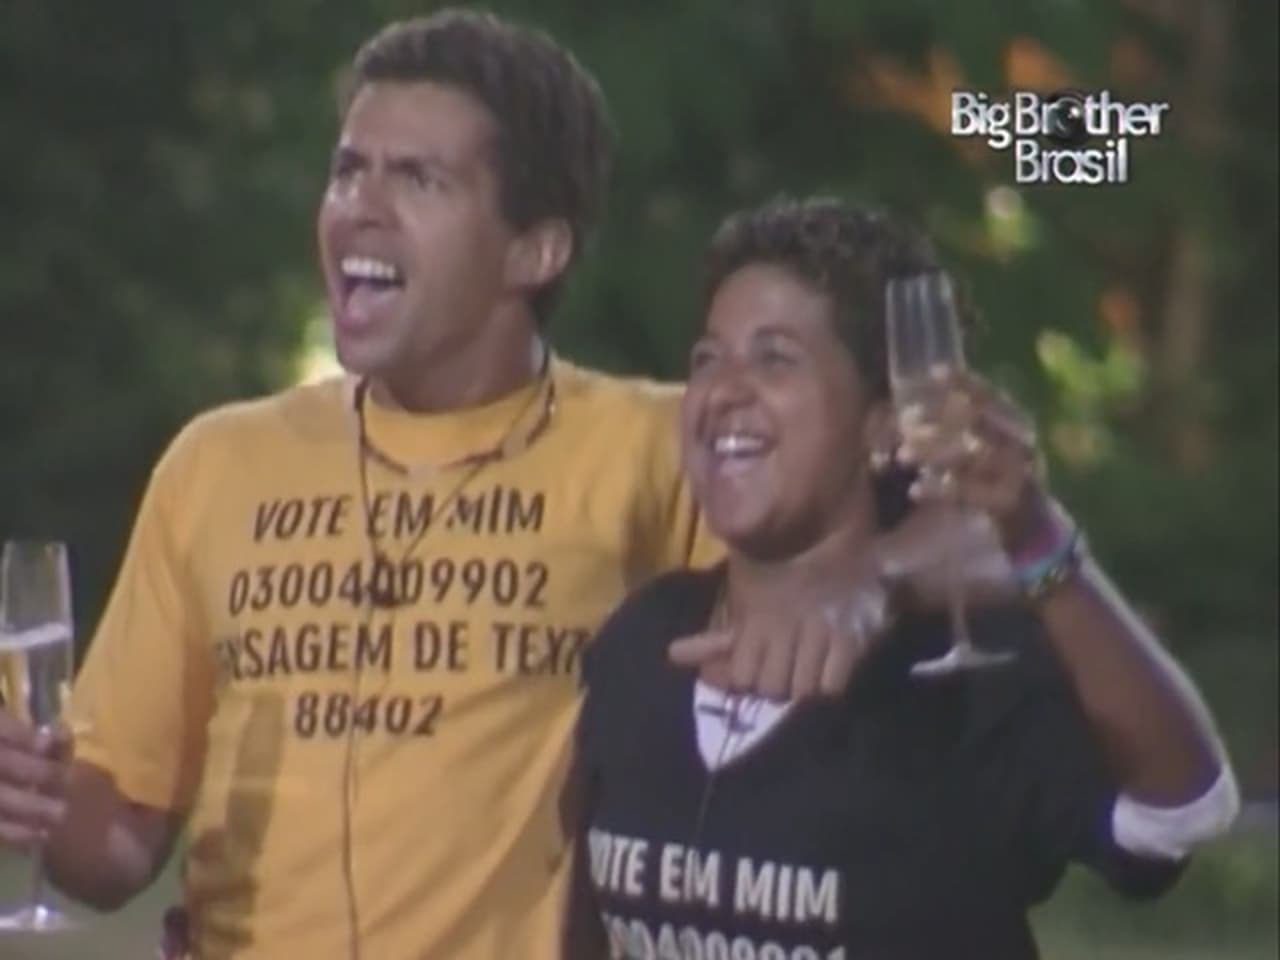 Big Brother Brasil - Season 4 Episode 84 : Episode 84